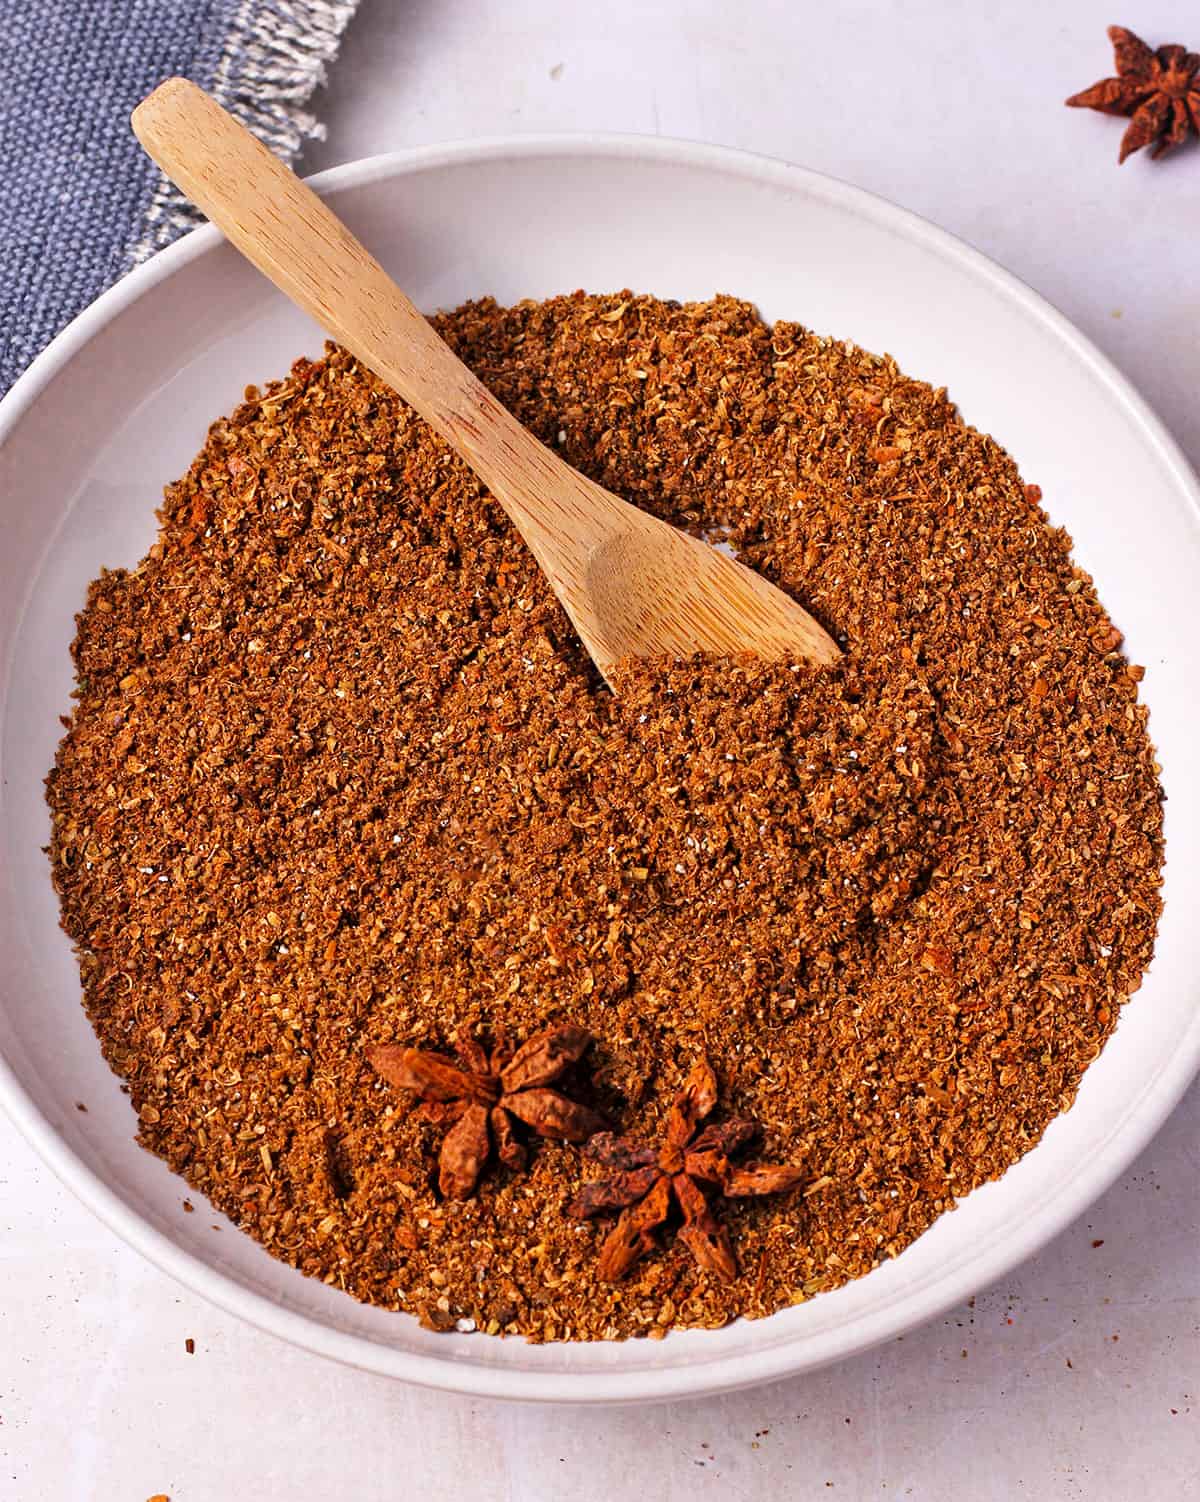 A dish of garam masala spice blend.